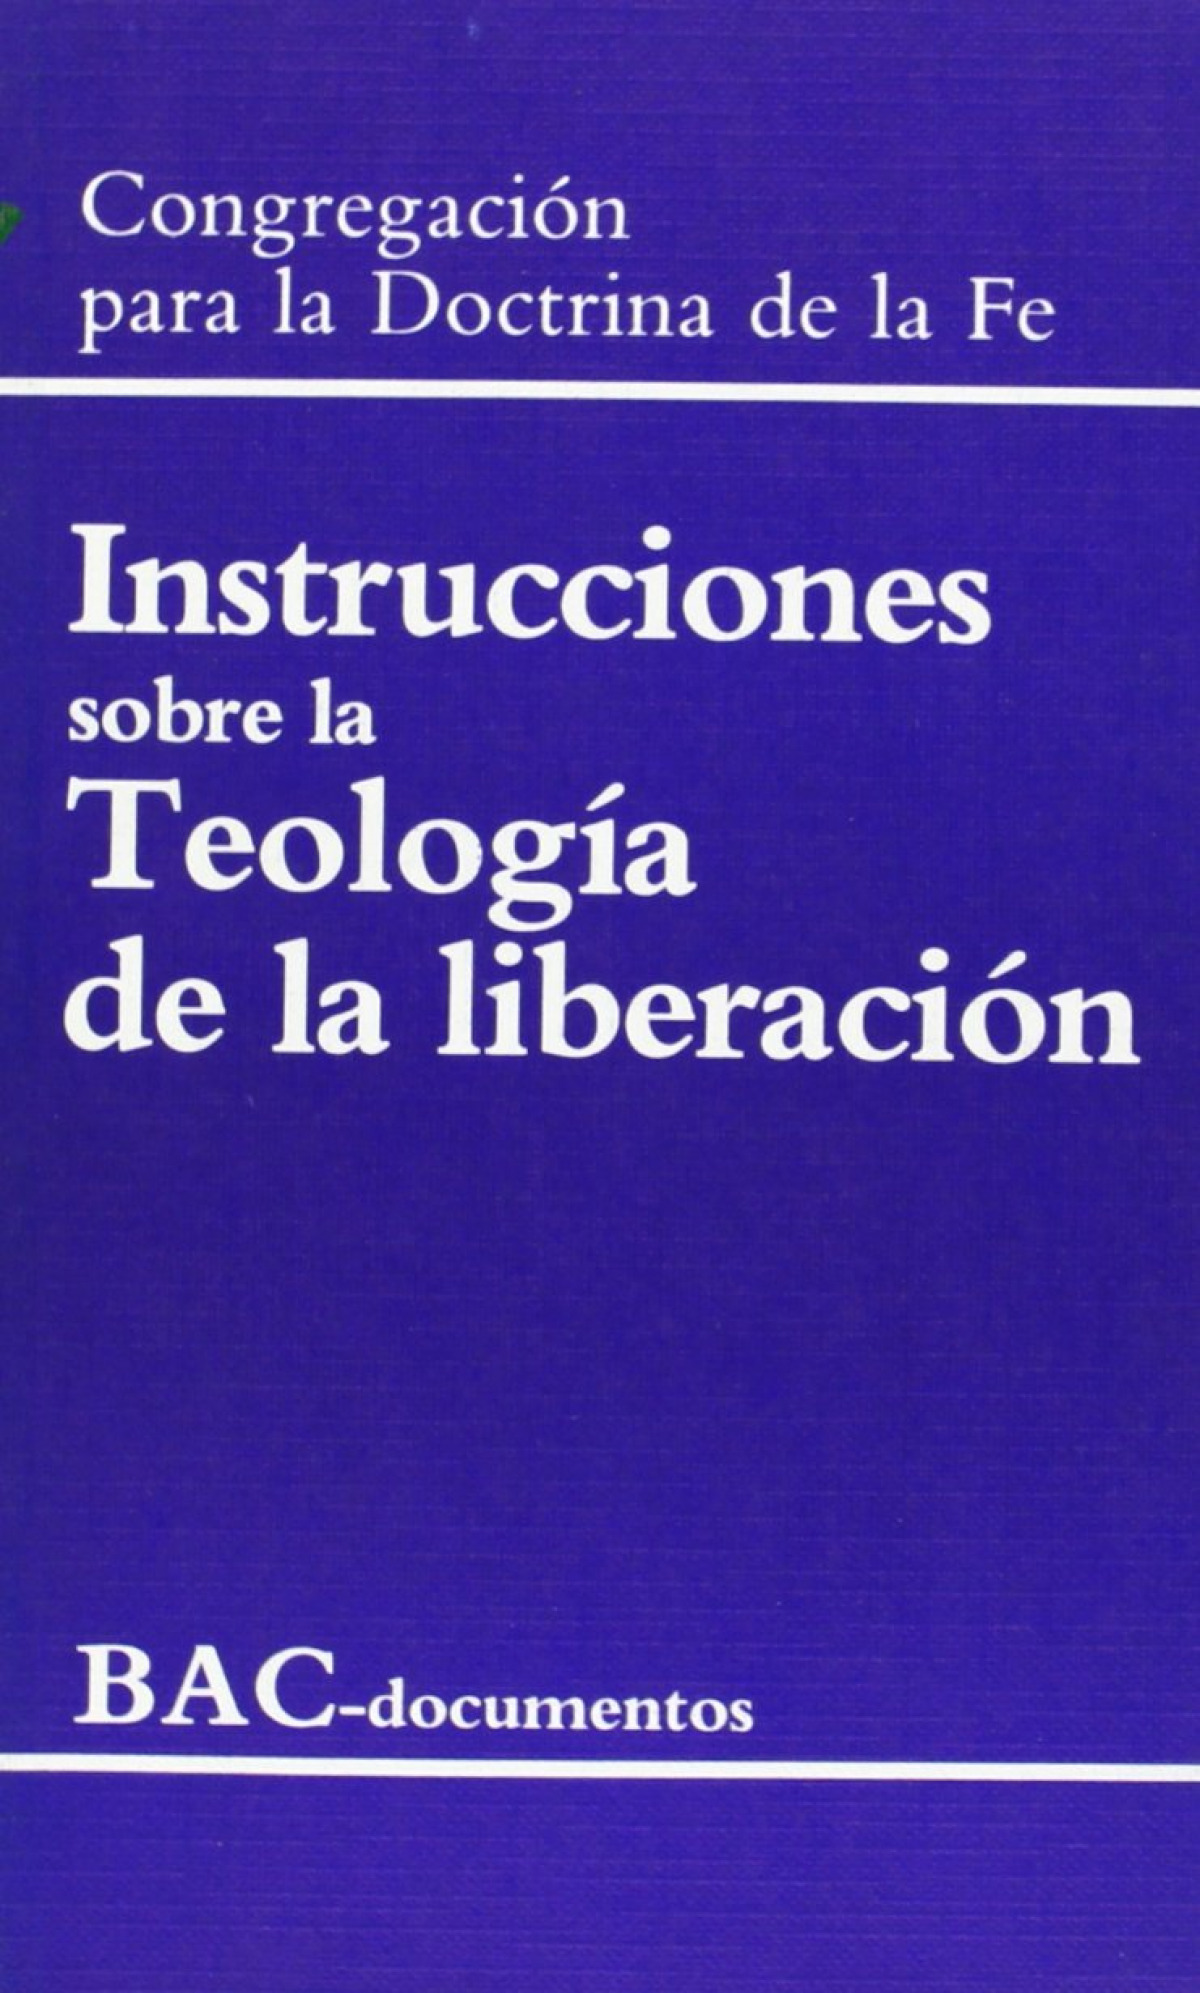 Instrucciones sobre la teología de la liberación / Instrucciones sobre - Congregación para la Doctrina de la Fe